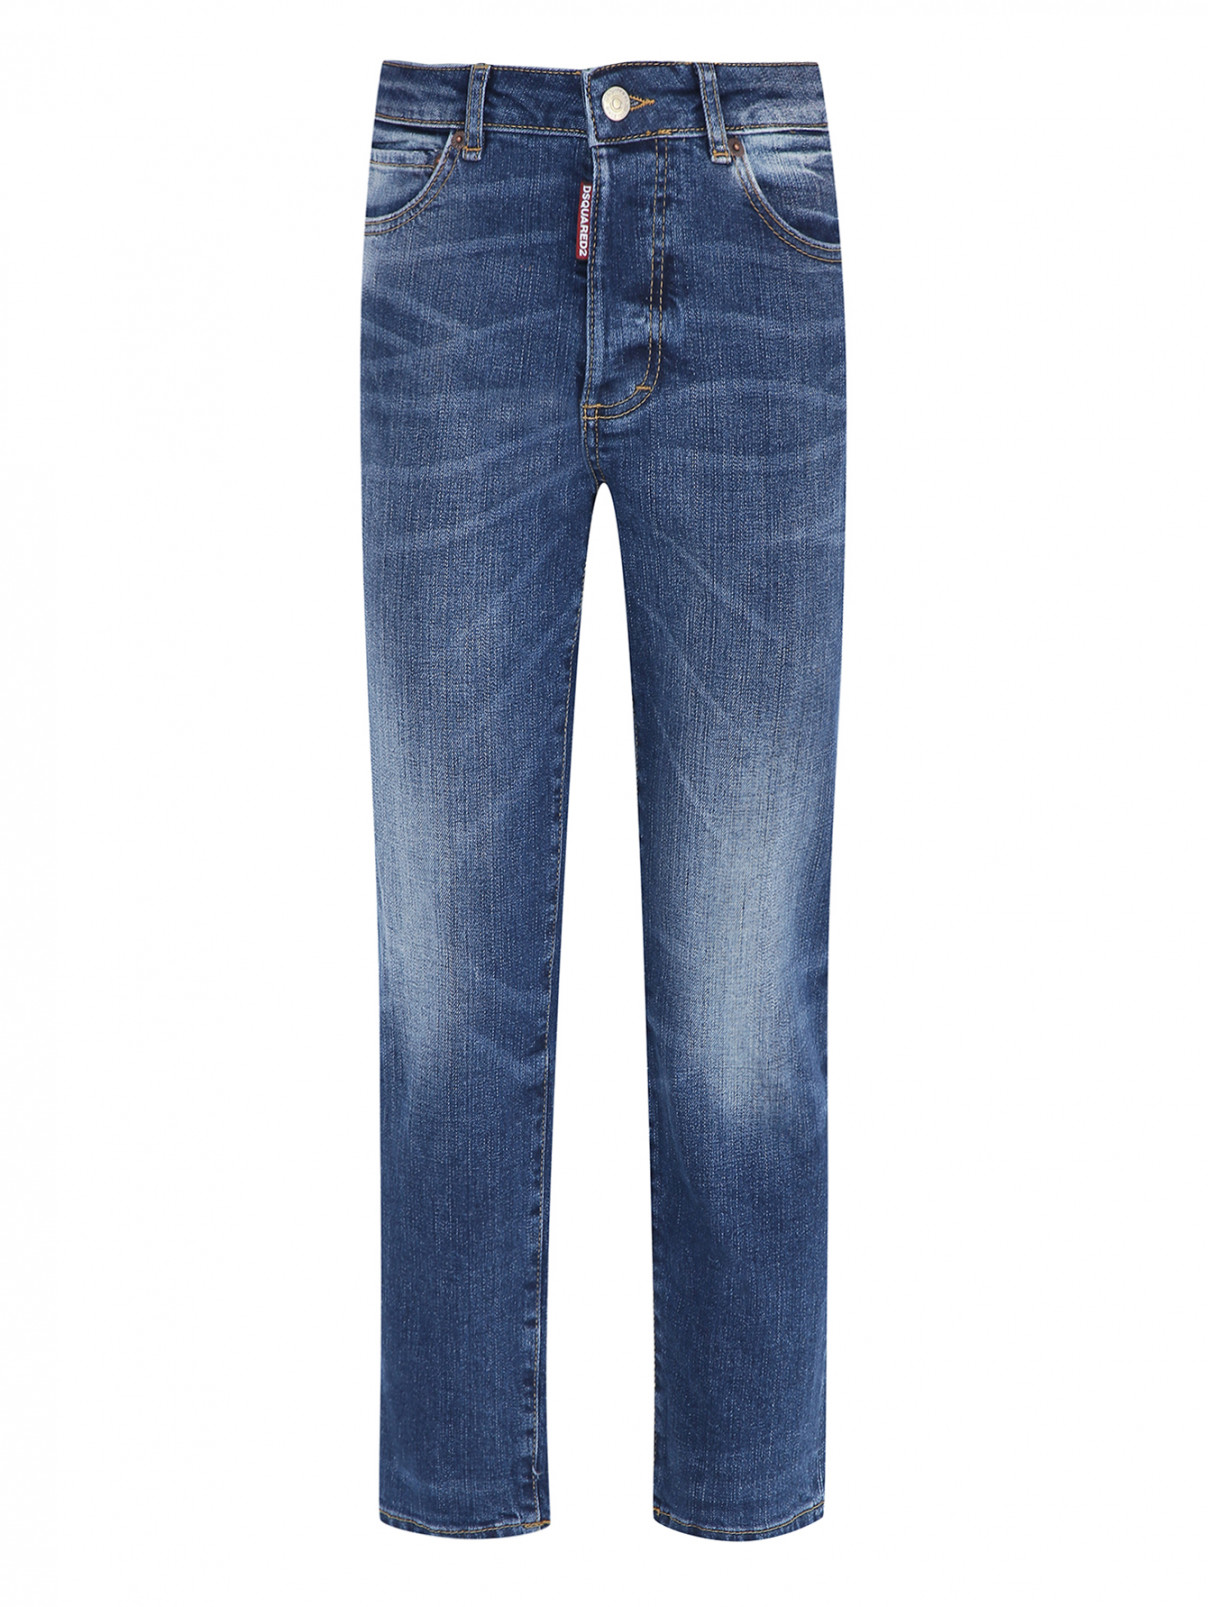 Прямые джинсы с карманами Dsquared2  –  Общий вид  – Цвет:  Синий